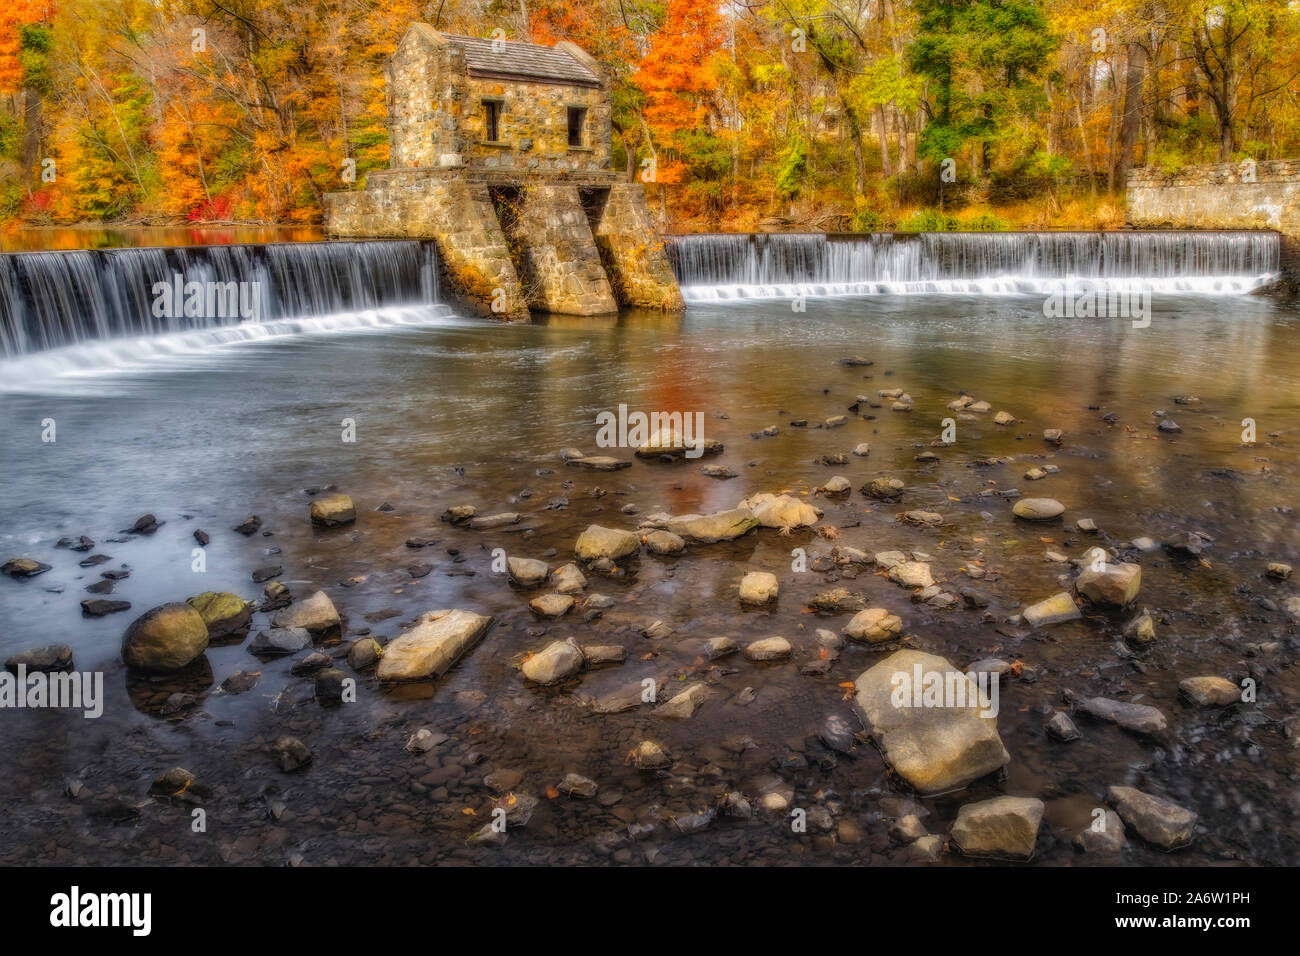 Speedwell Dam e cascate - Vista della struttura in pietra sul fiume Whippany circondato dai colori caldi della caduta delle foglie. Foto Stock